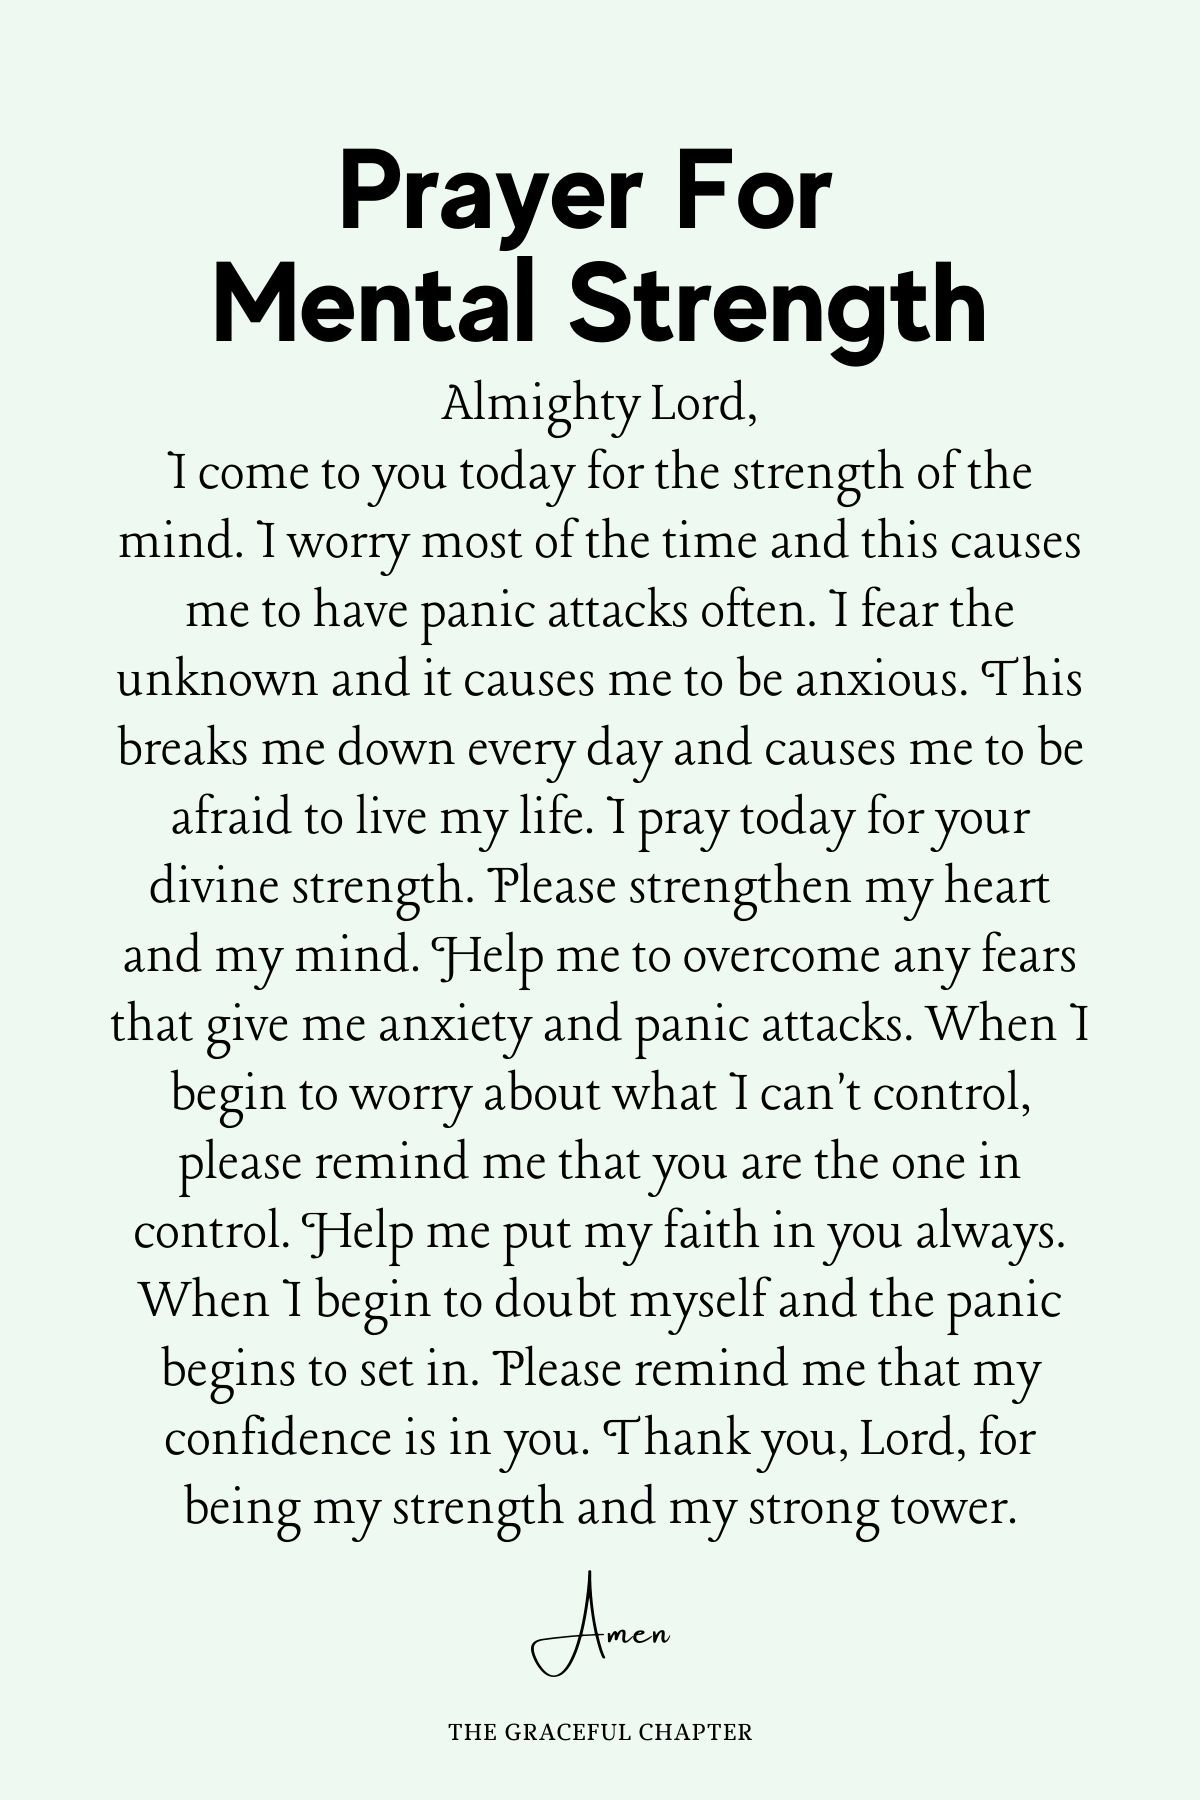 Prayer for mental strength